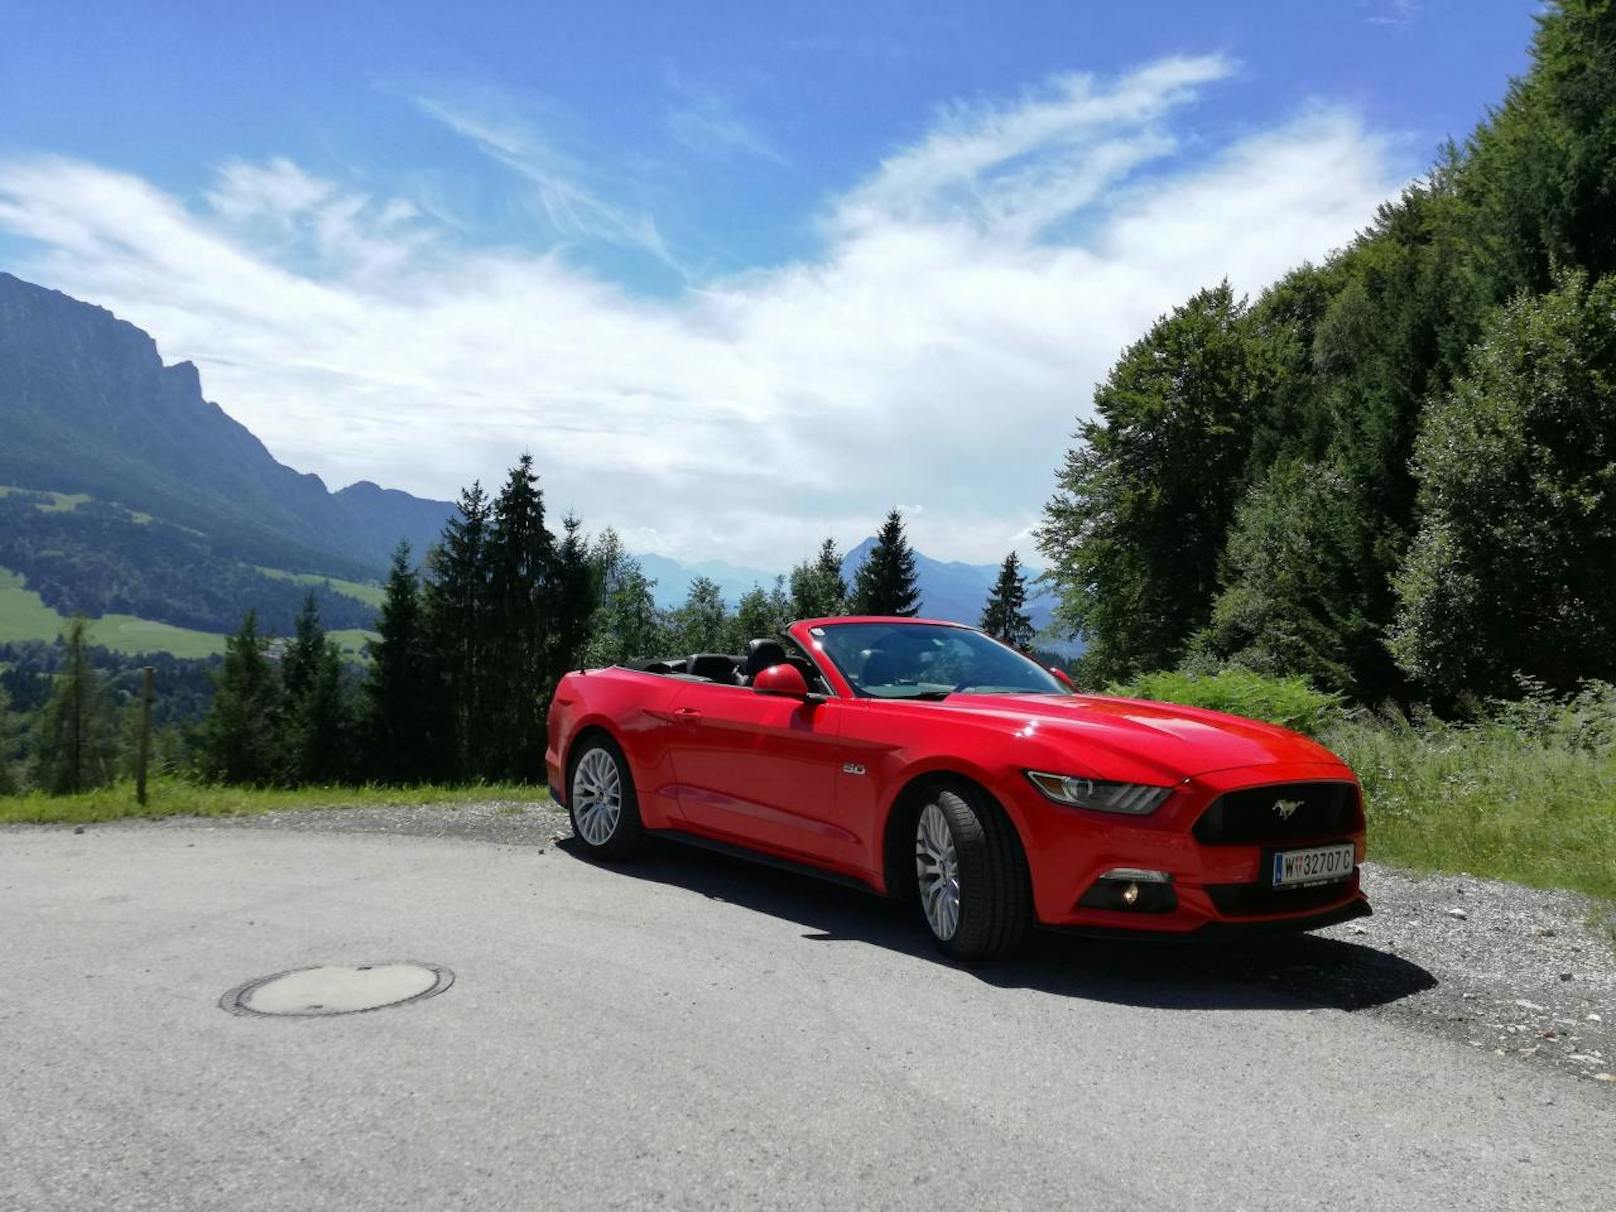 Zum Cruisen durch schöne Landschaften ist der Mustang ideal.